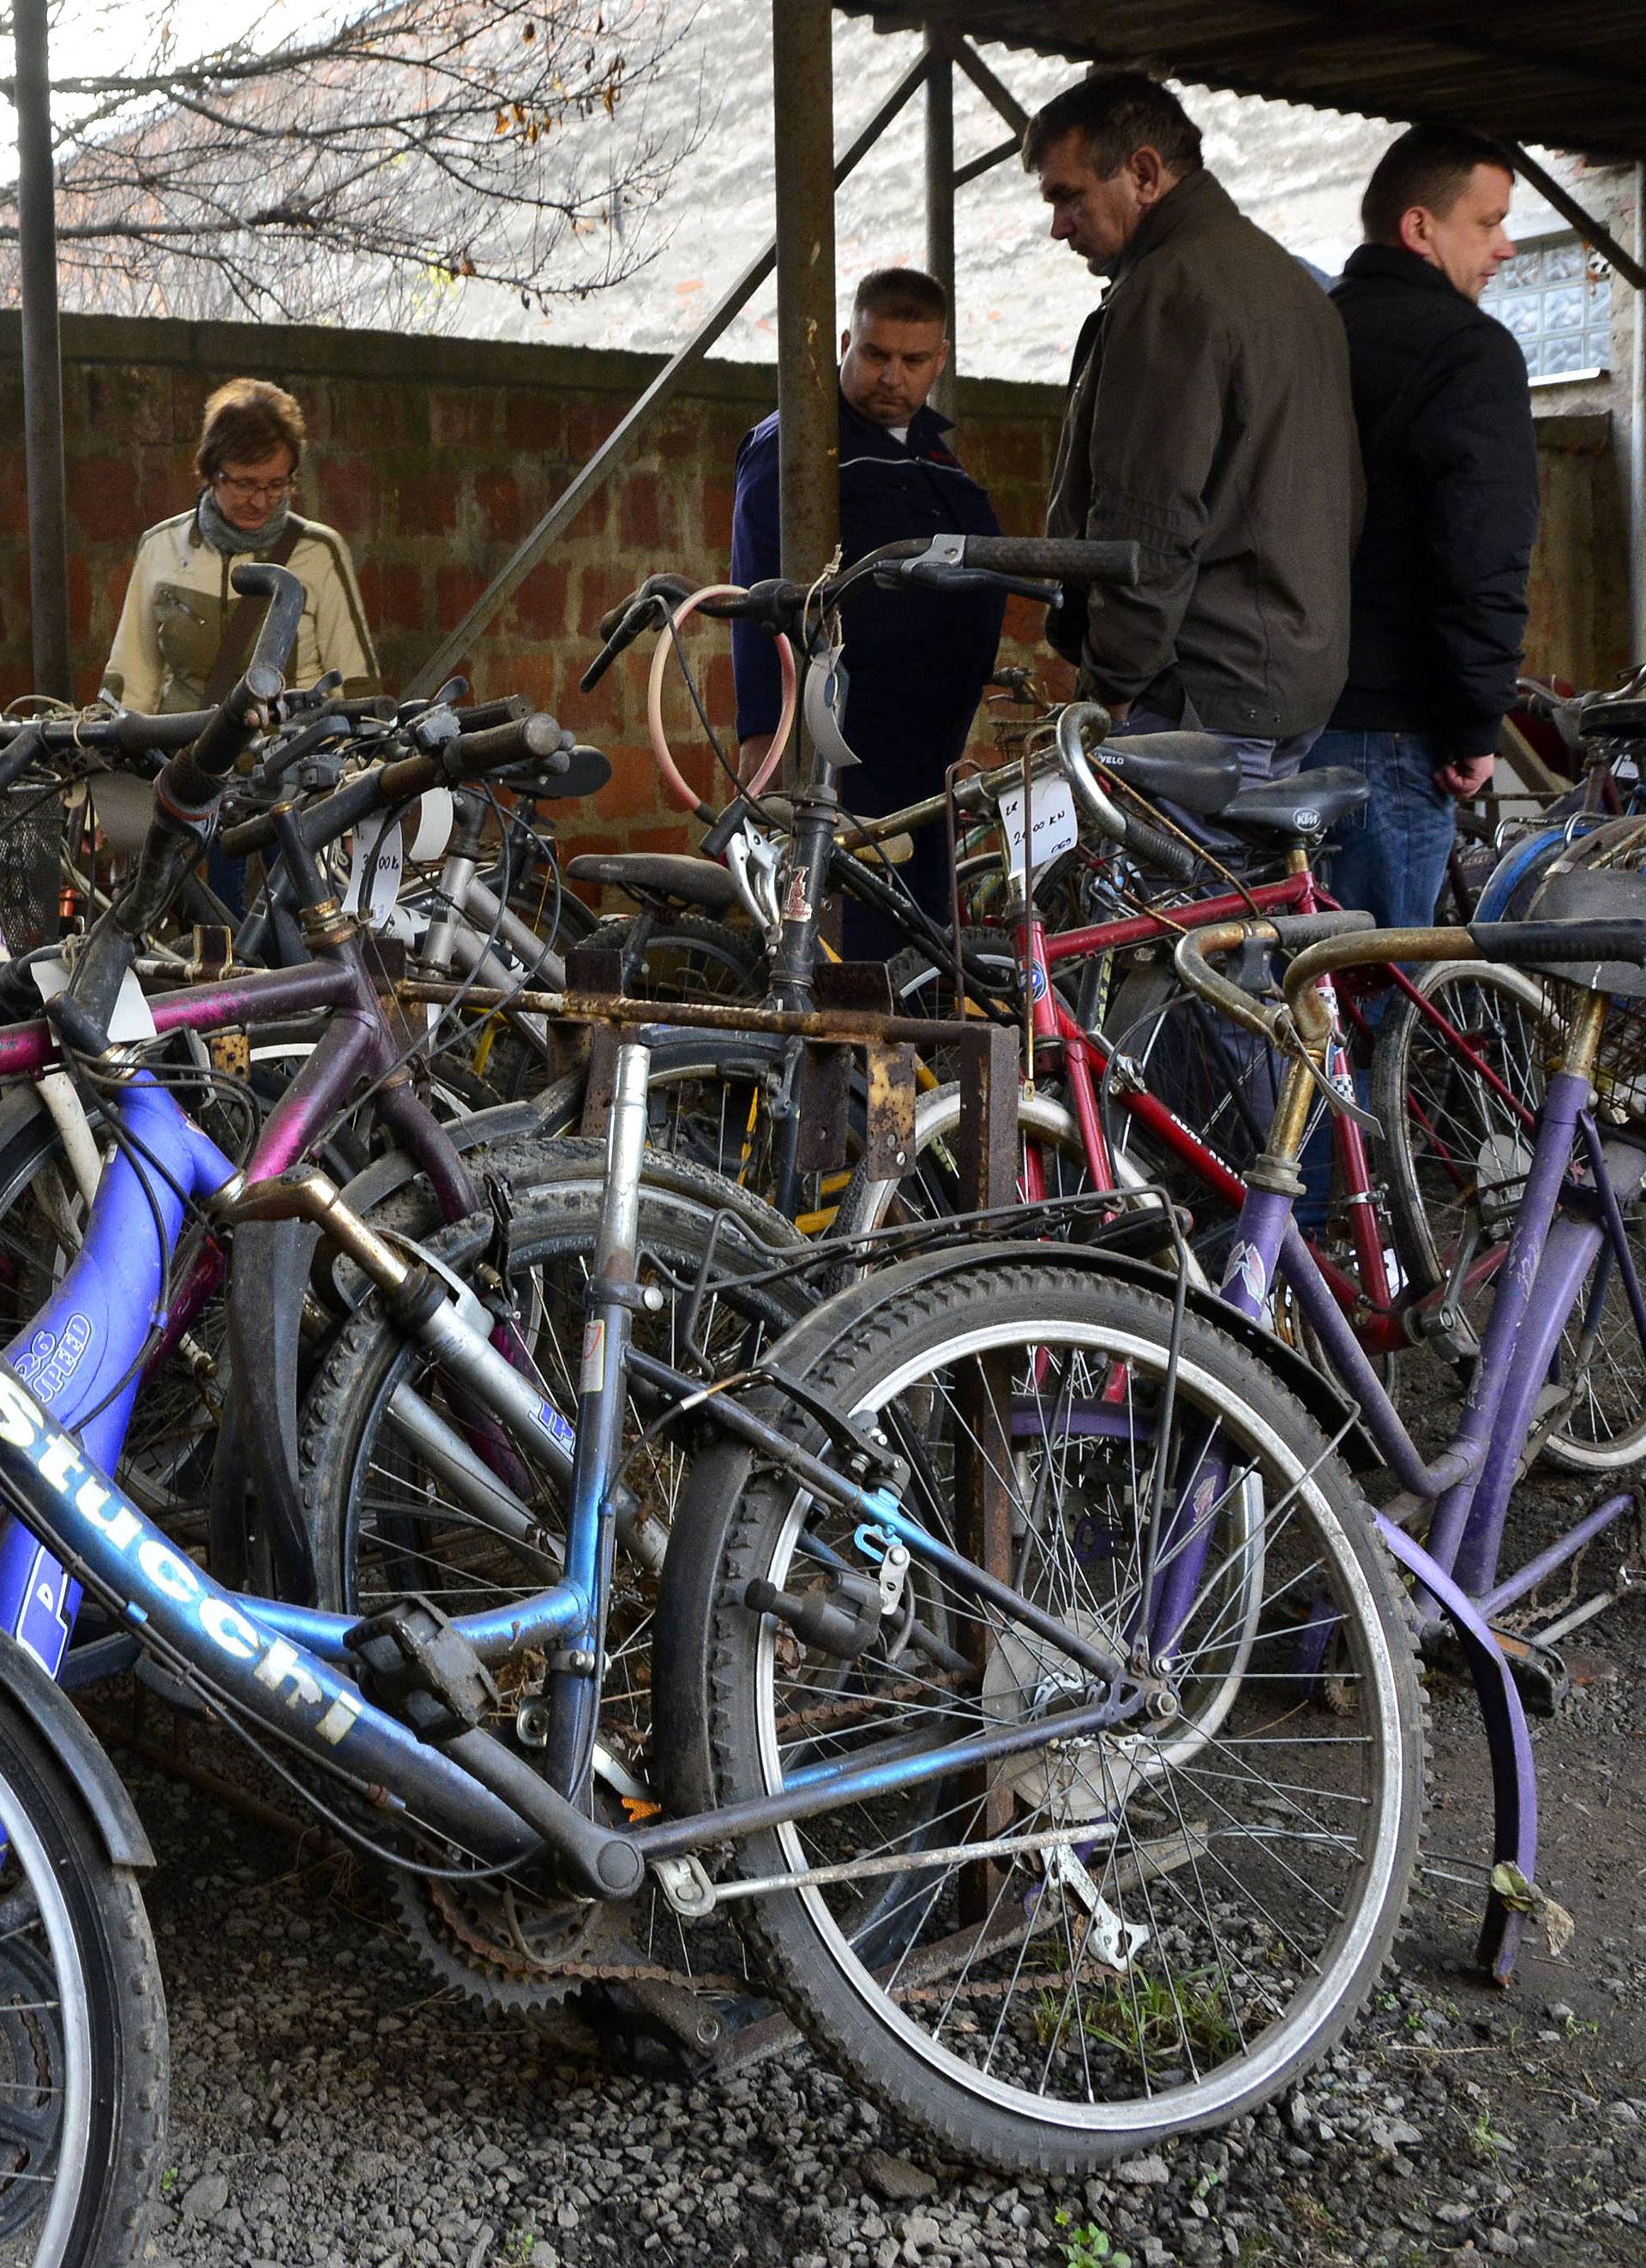 Javna rasprodaja: Na prodaju je ponuđeno stotinjak bicikla